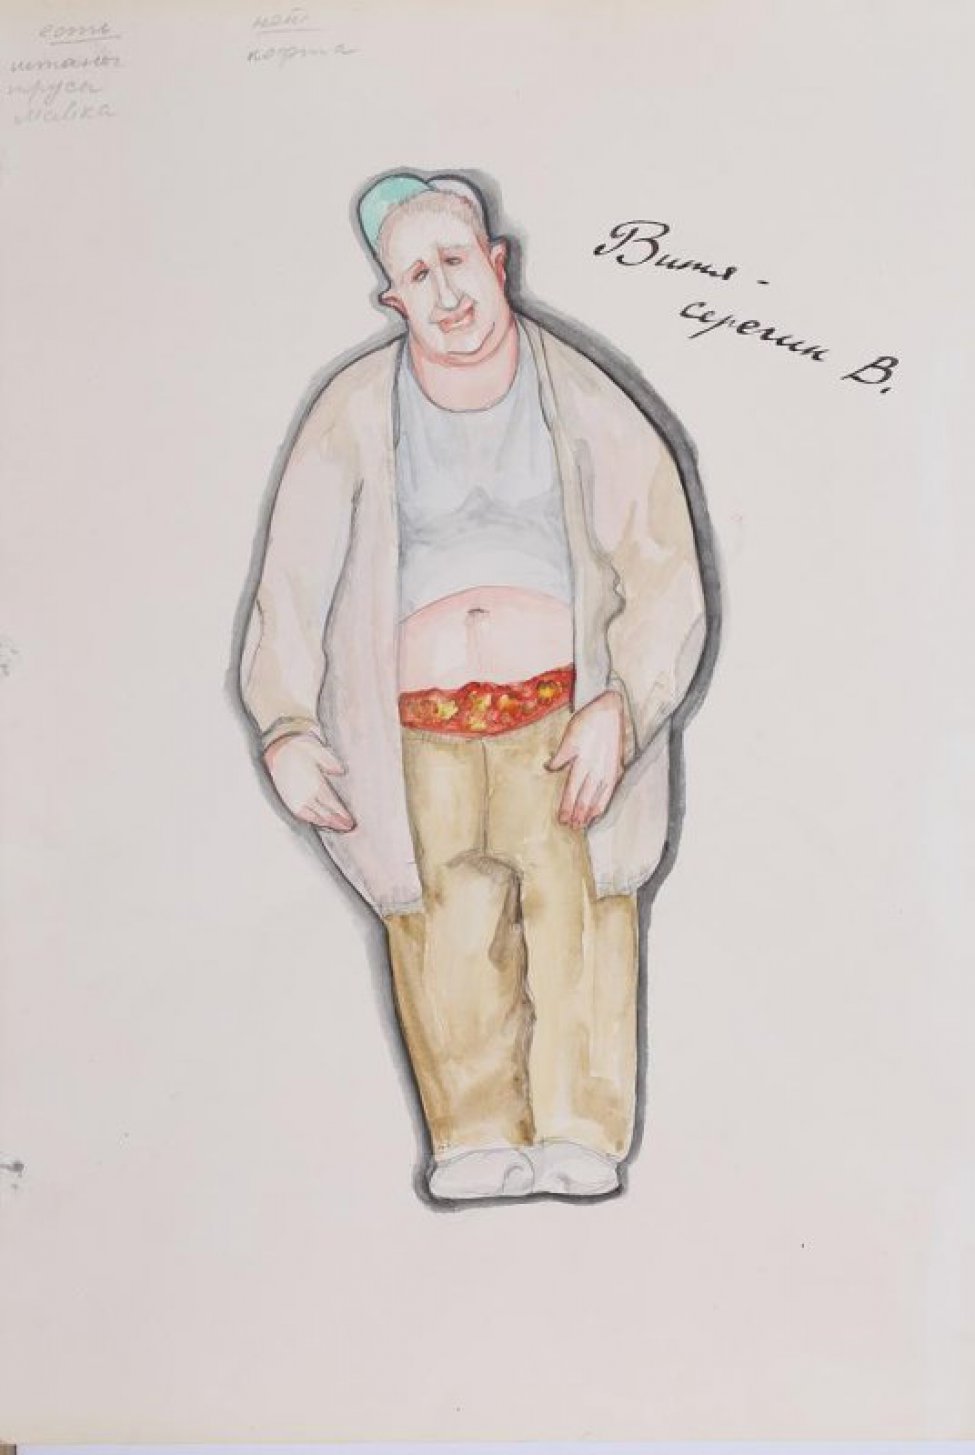 Изображен грузный молодой мужчина в серой майке, из-под которой виден живот, светлых штанах из-под которых видны красные цветастые трусы, в расстегнутой светлой кофте до колен. На голове кепка со светло-зеленым  козырьком.